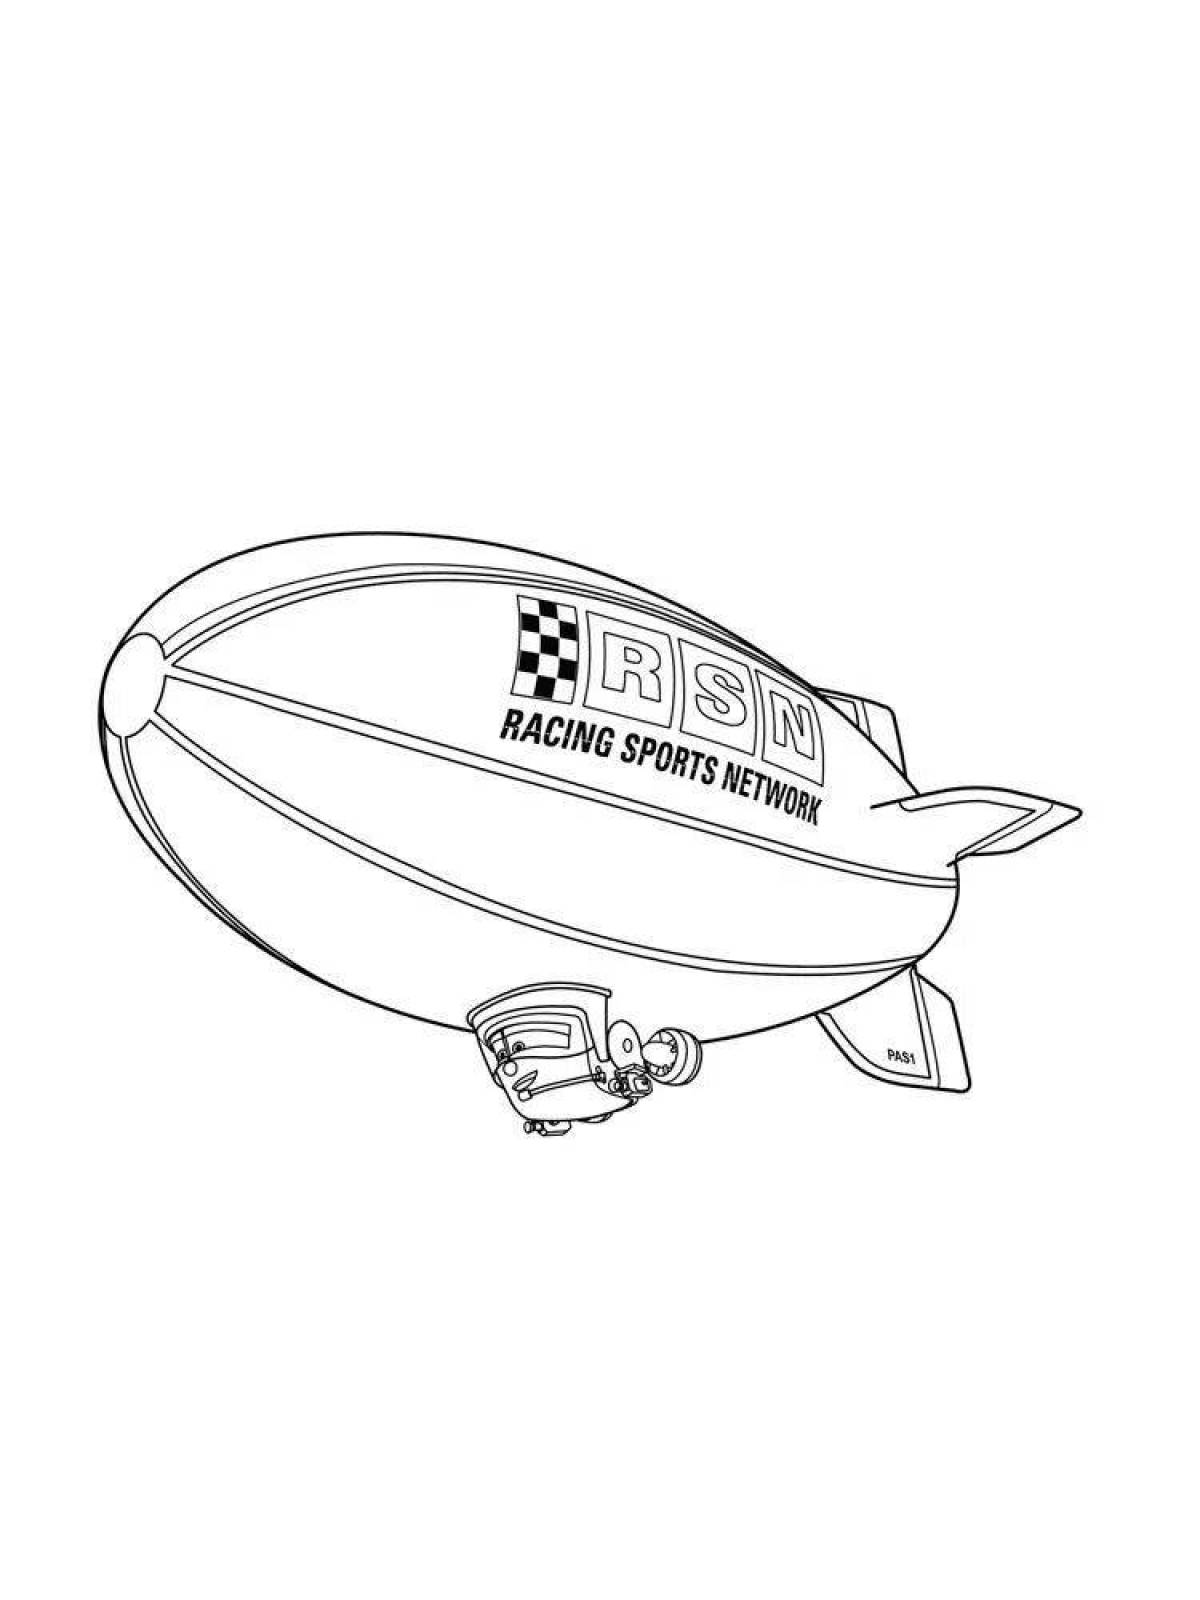 Rampant airship coloring page